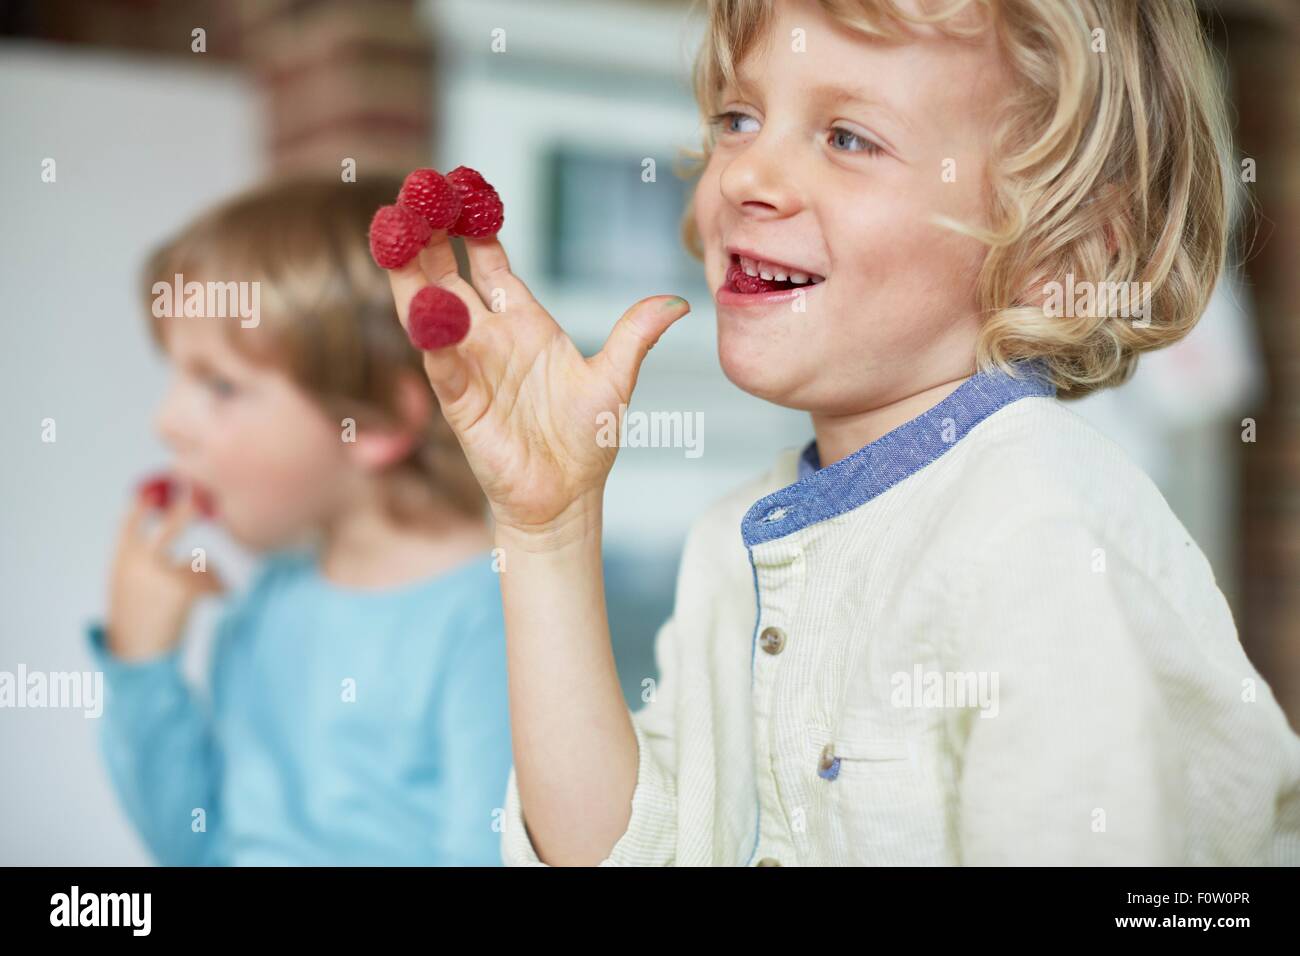 Two boys eating raspberries off fingertips Stock Photo